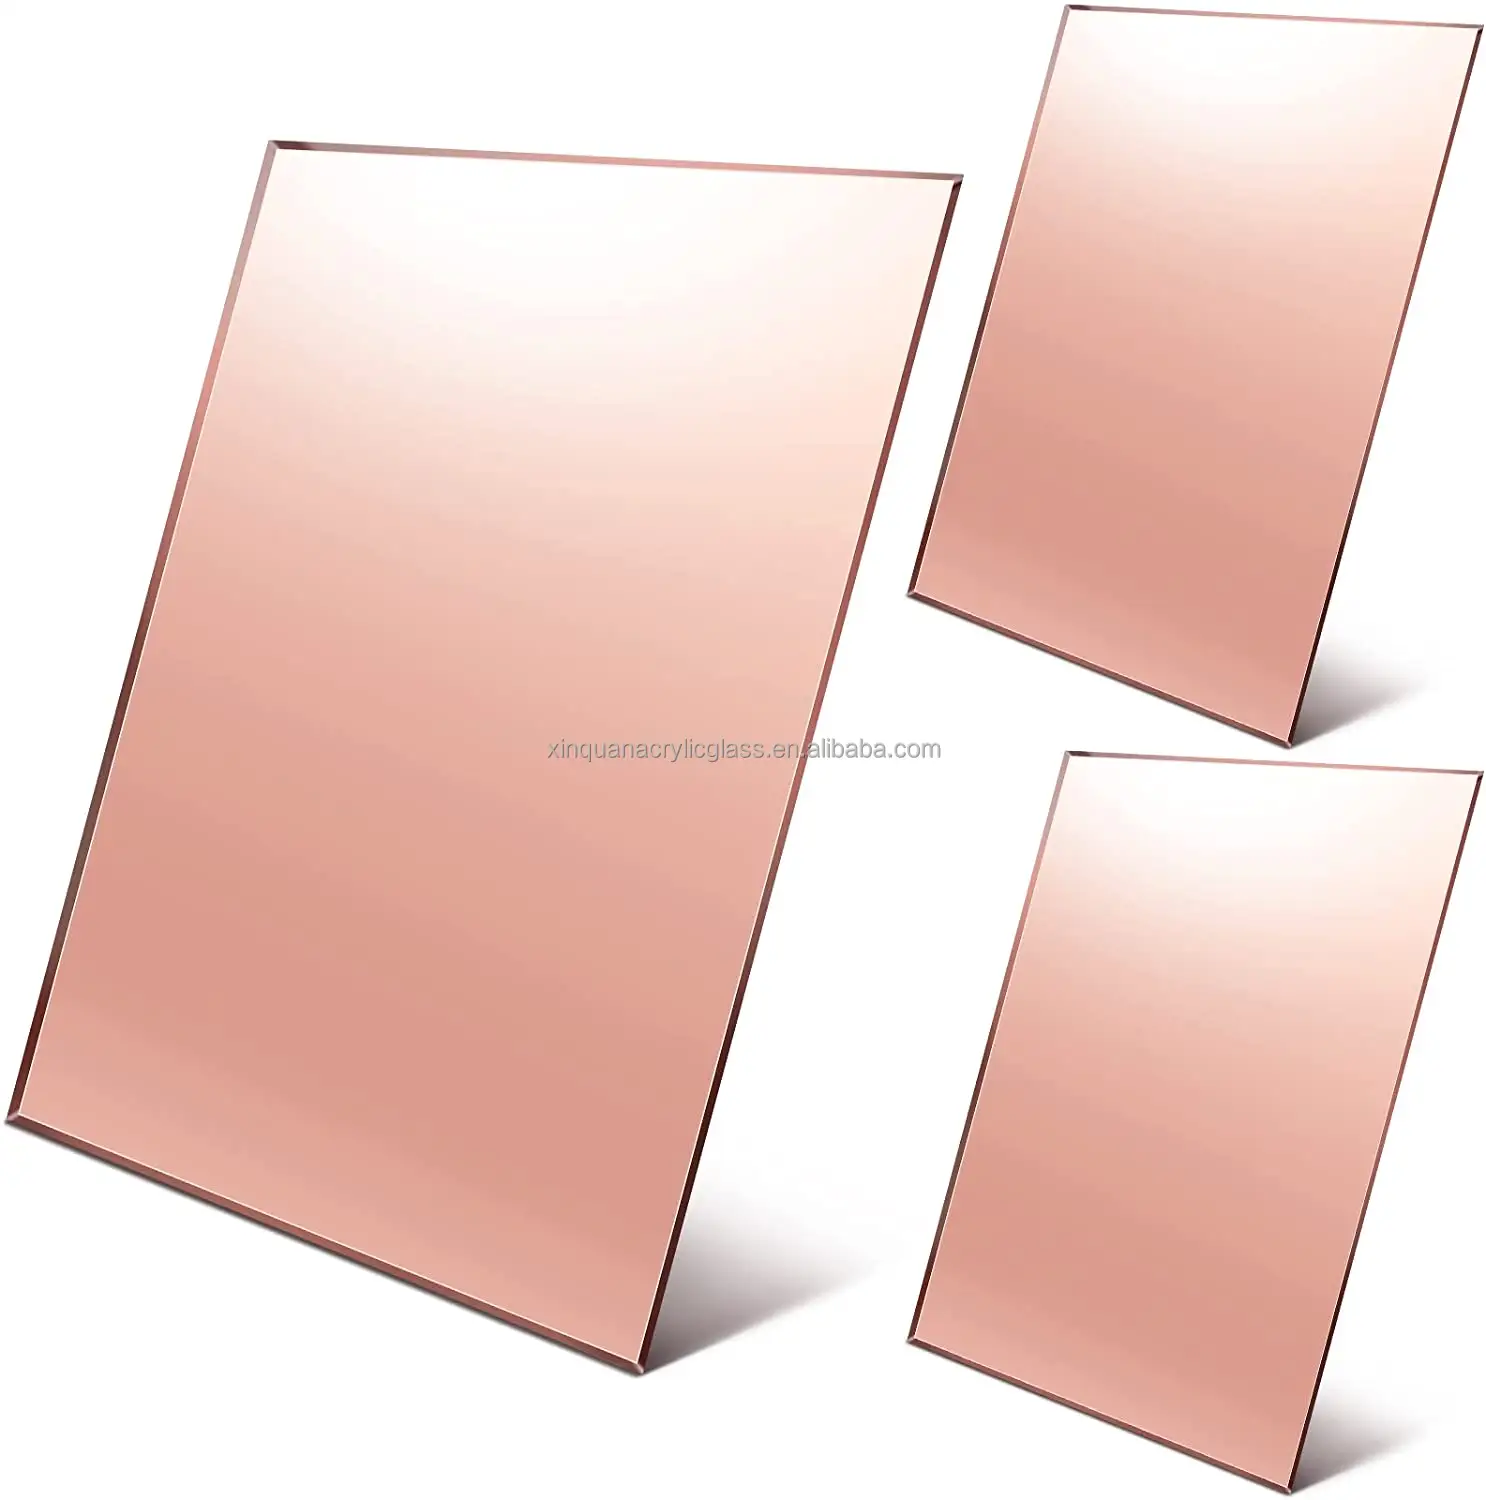 Painel de espelho acrílico personalizado OEM/ODM do fabricante, painel acrílico de lucita de ouro rosa do espelho do plexiglass